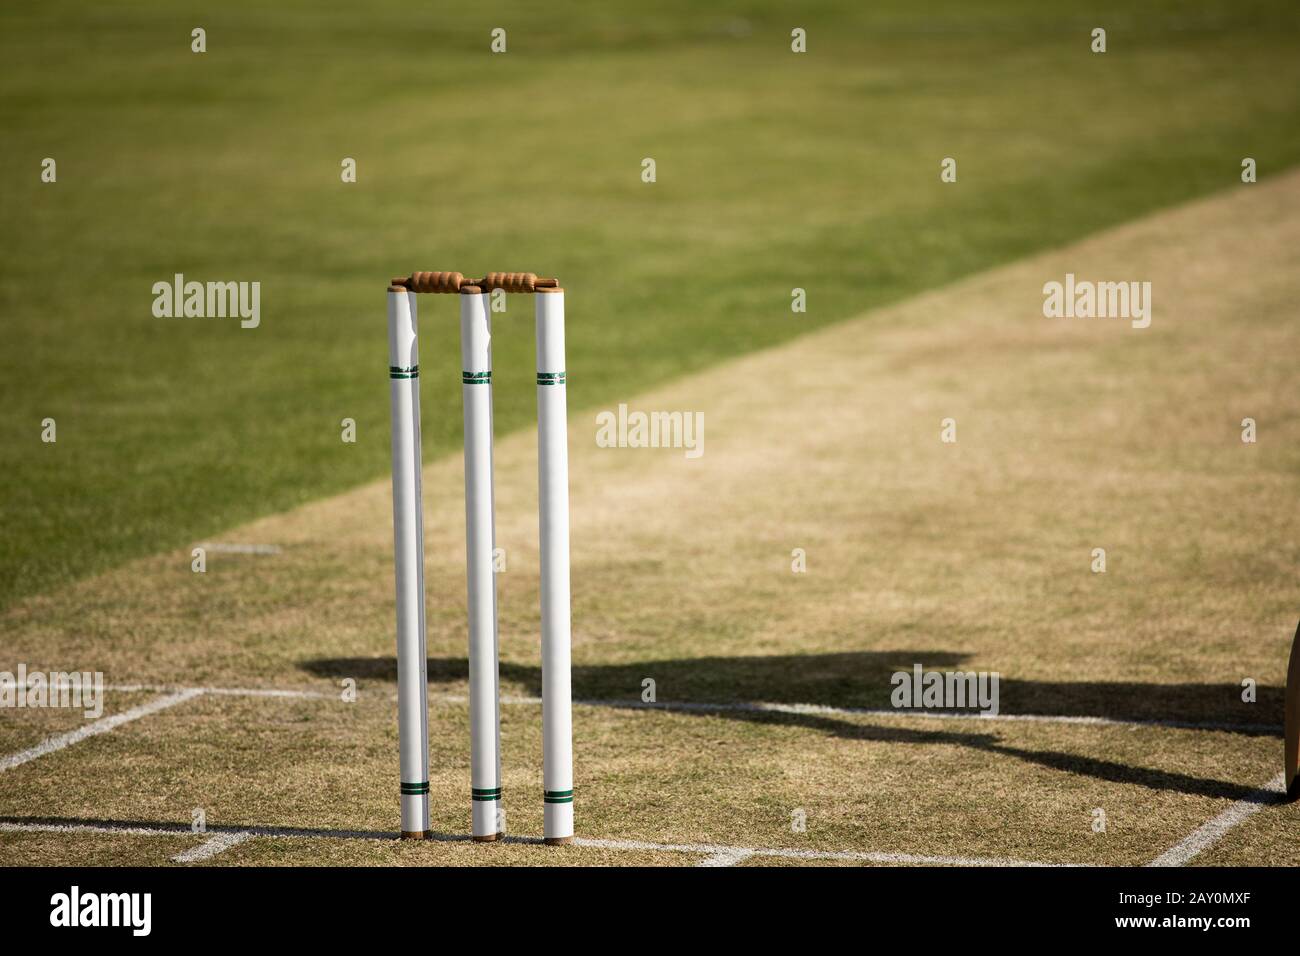 Les sauts de cricket se tiennent sur un terrain de cricket Banque D'Images